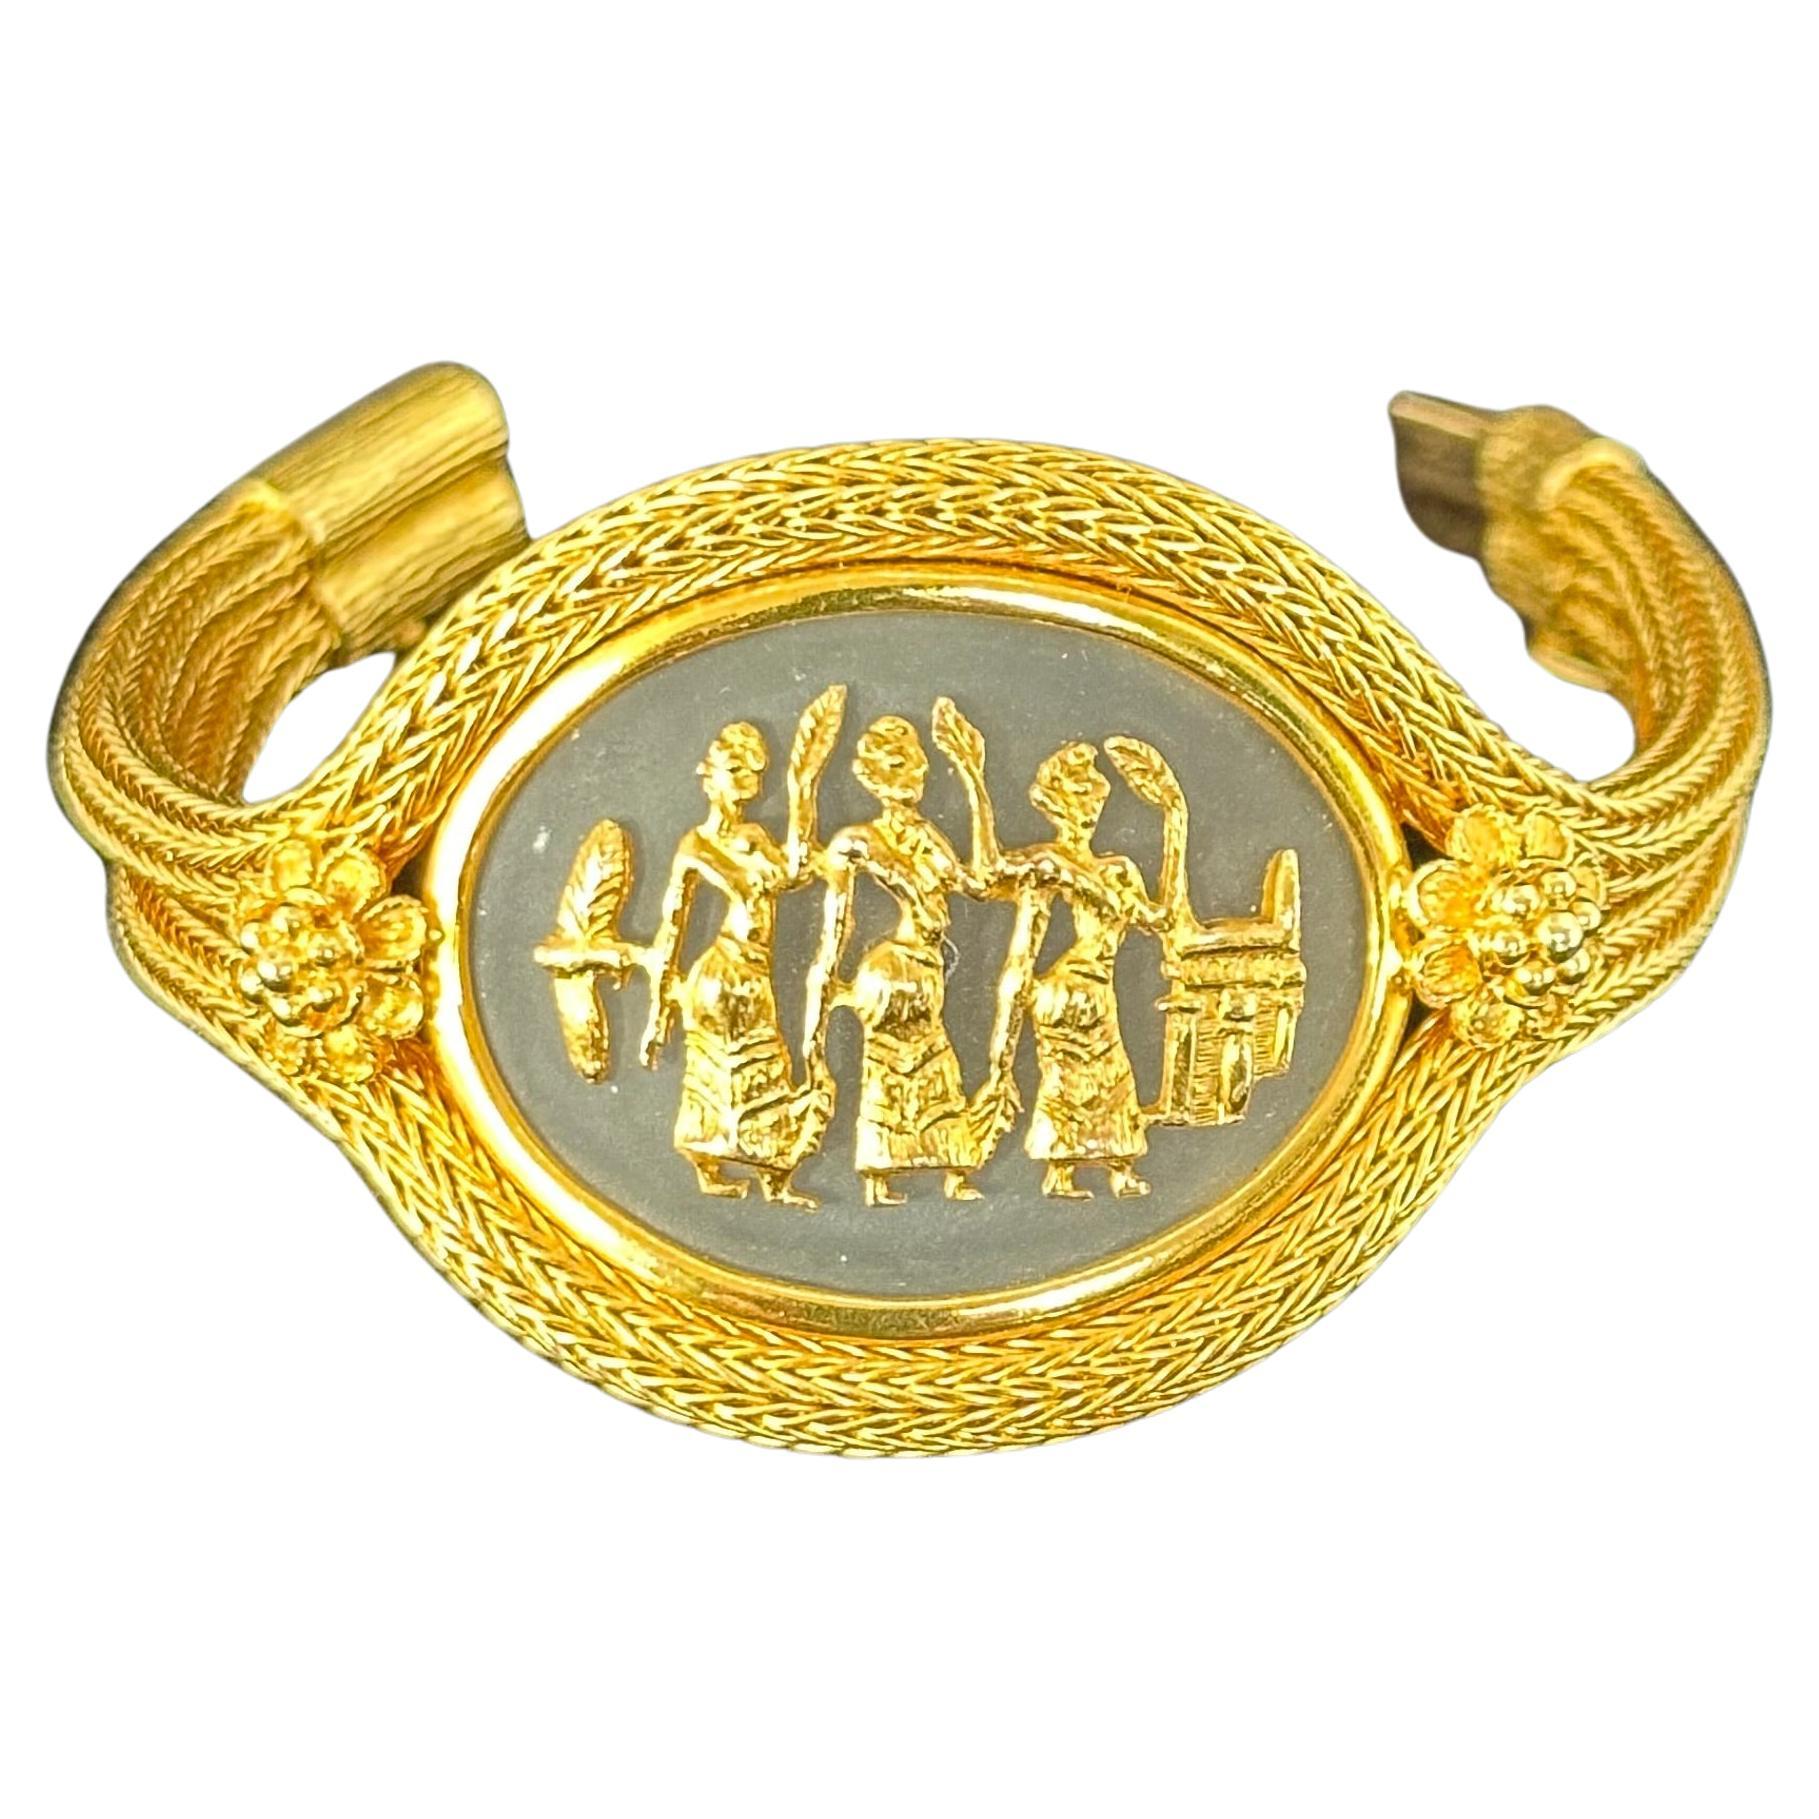 LiLias LALAounis Hellenistic 18k Gold Woven Bracelet 